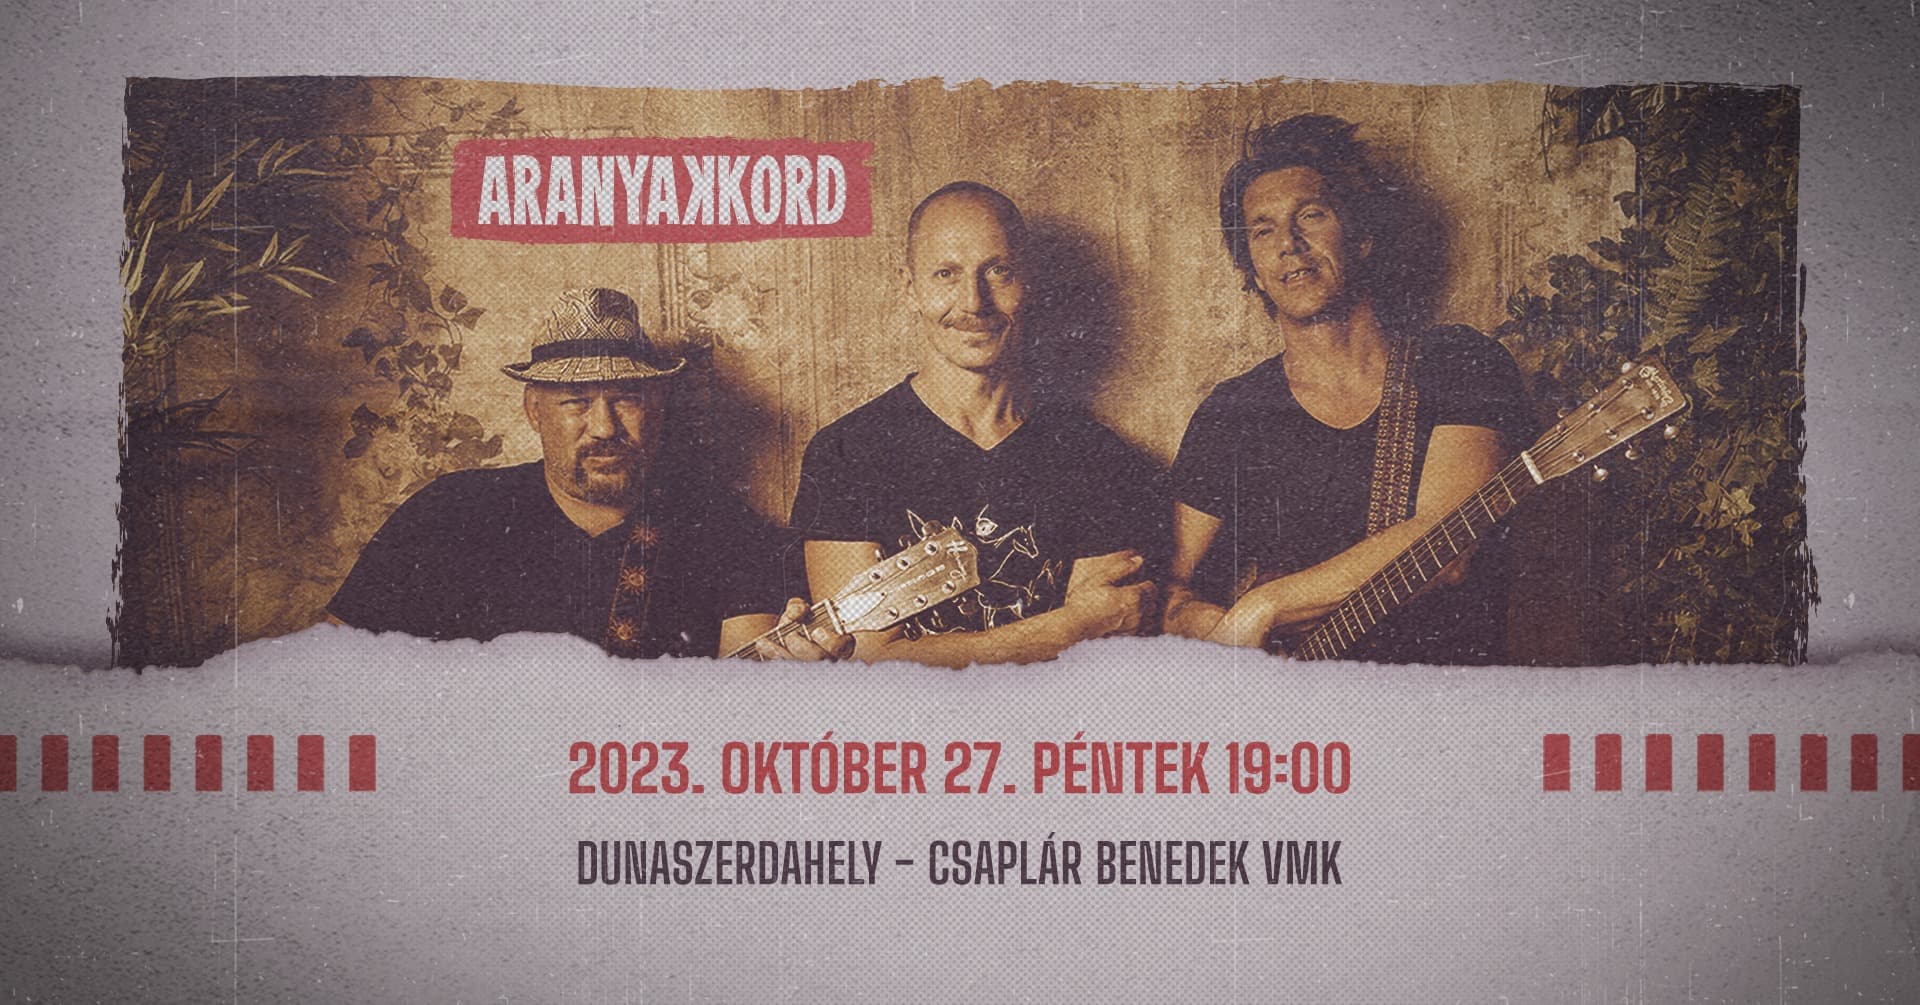 Október 27-én Aranyakkord koncert a dunaszerdahelyi VMK-ban – jegyek még kaphatók!